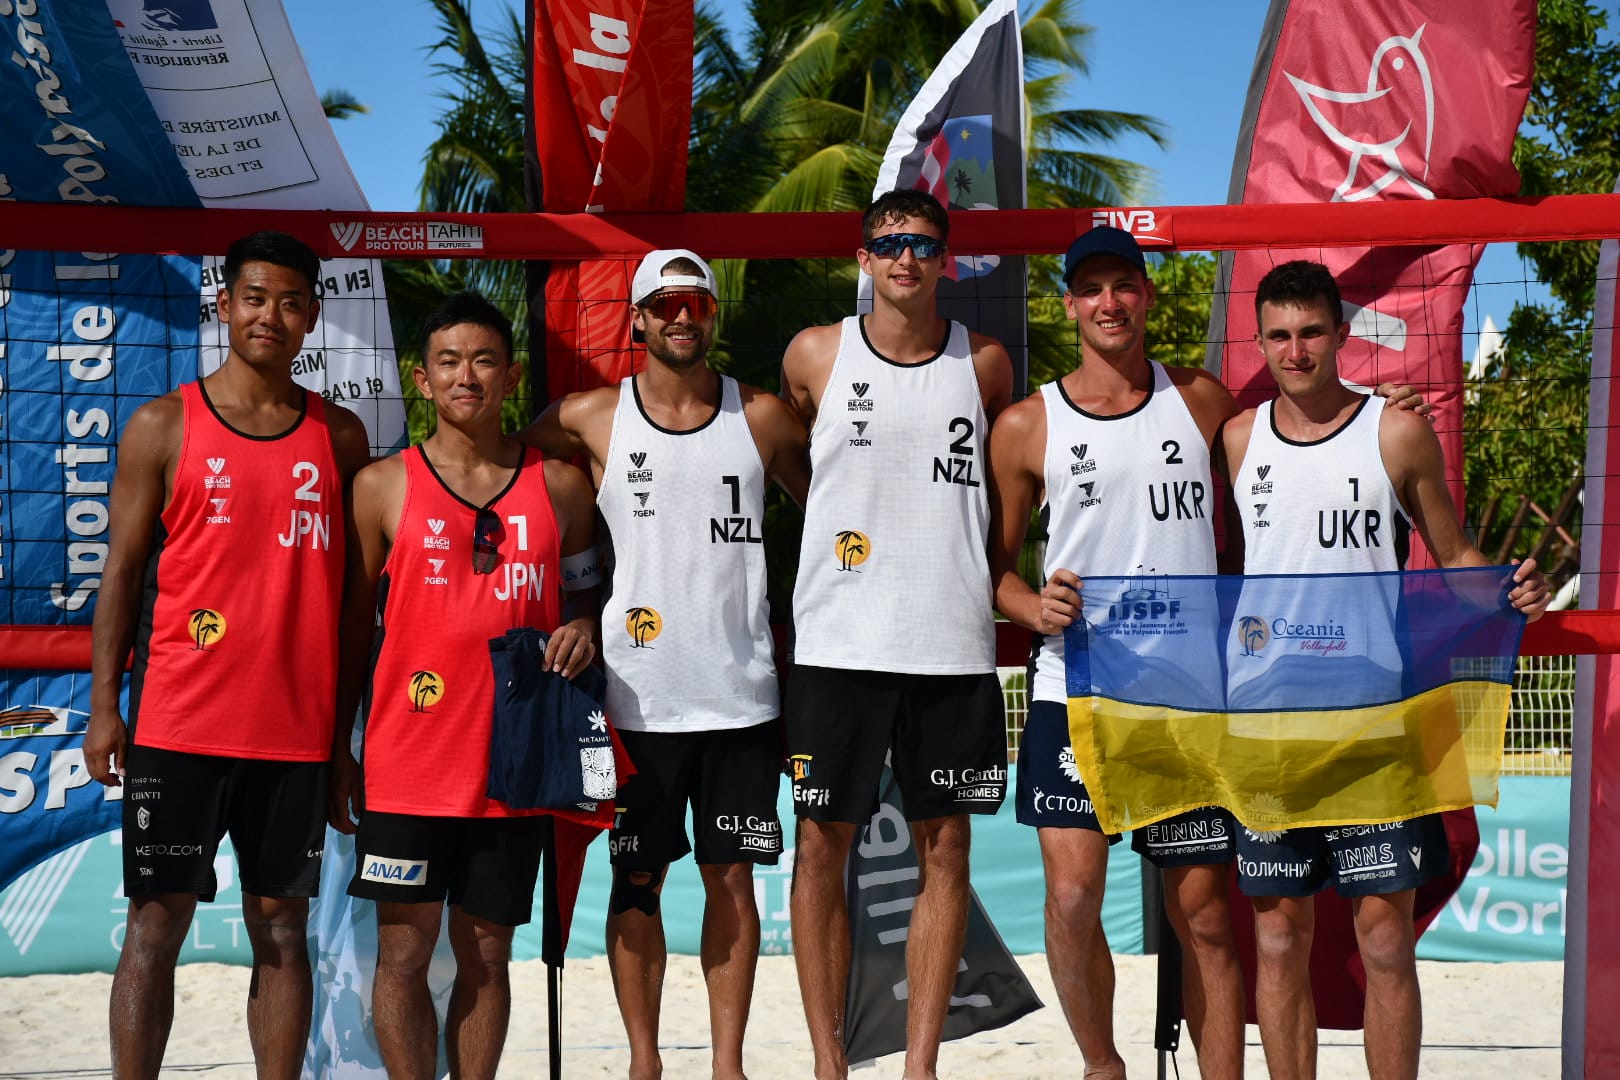 Les Néo-Zélandais Thomas Reid et John McManaway (au centre) ont remporté l’étape tahitienne du World Beach Tour en battant les Japonais Takumi Takahashi et Jumpei Ikeda (à gauche) en finale. Les Ukrainiens Ivan Datsiuk et Ivan Likhatsky (à droite) ont pris la troisième place.